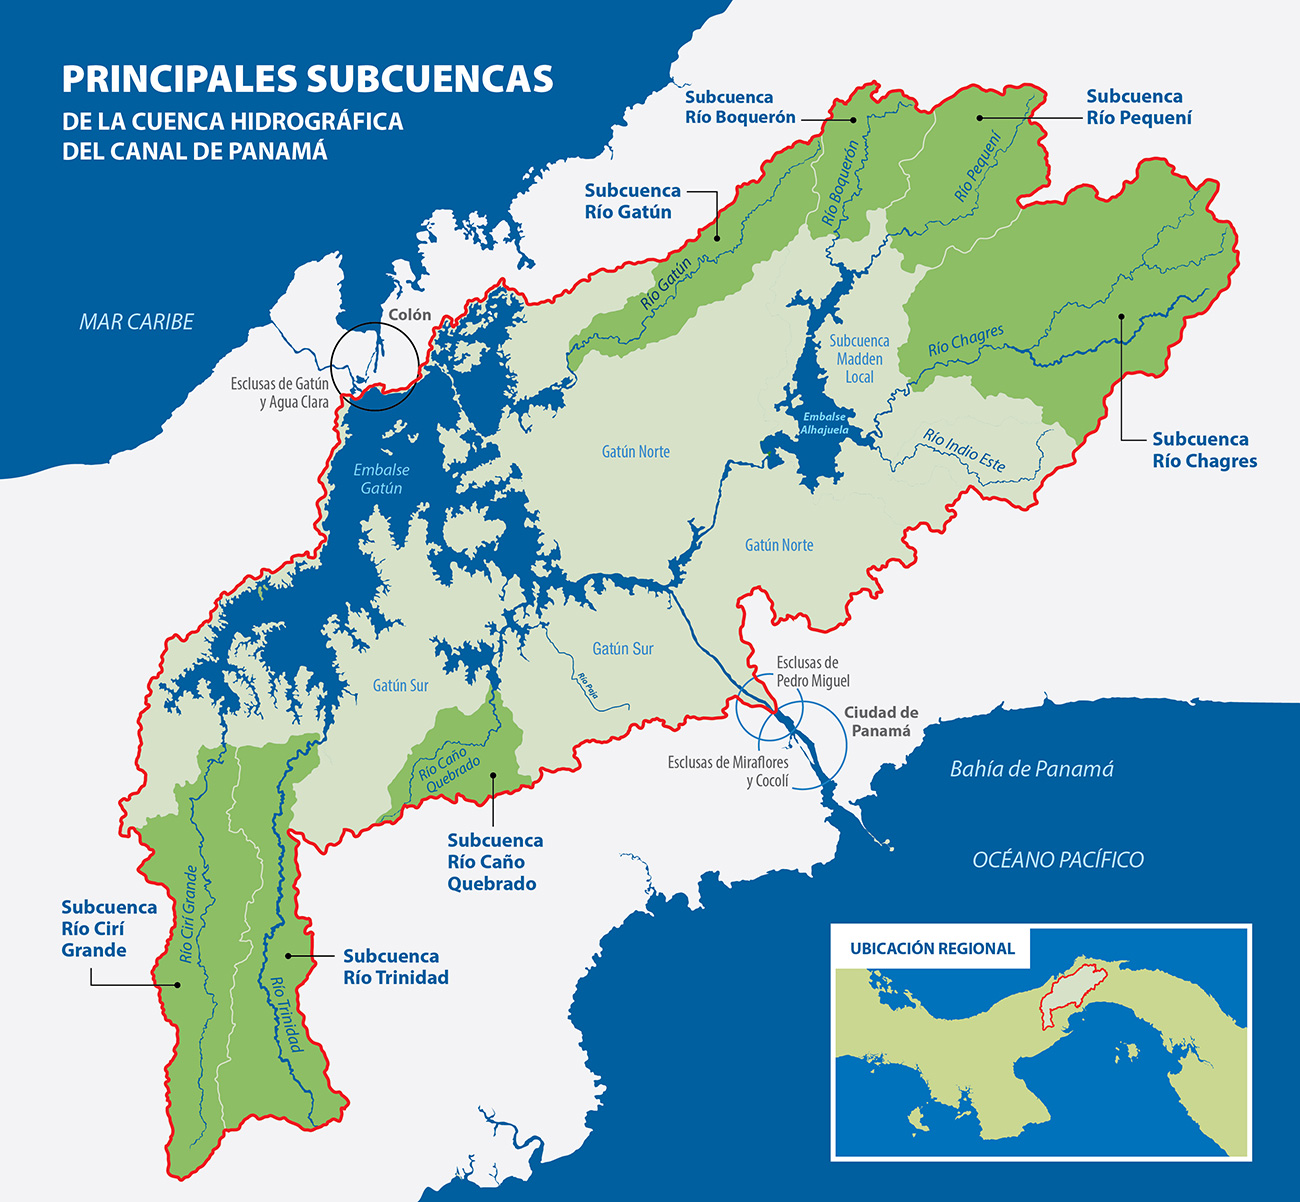 Principales subcuencas de la cuenca hidrográfica del Canal de Panamá